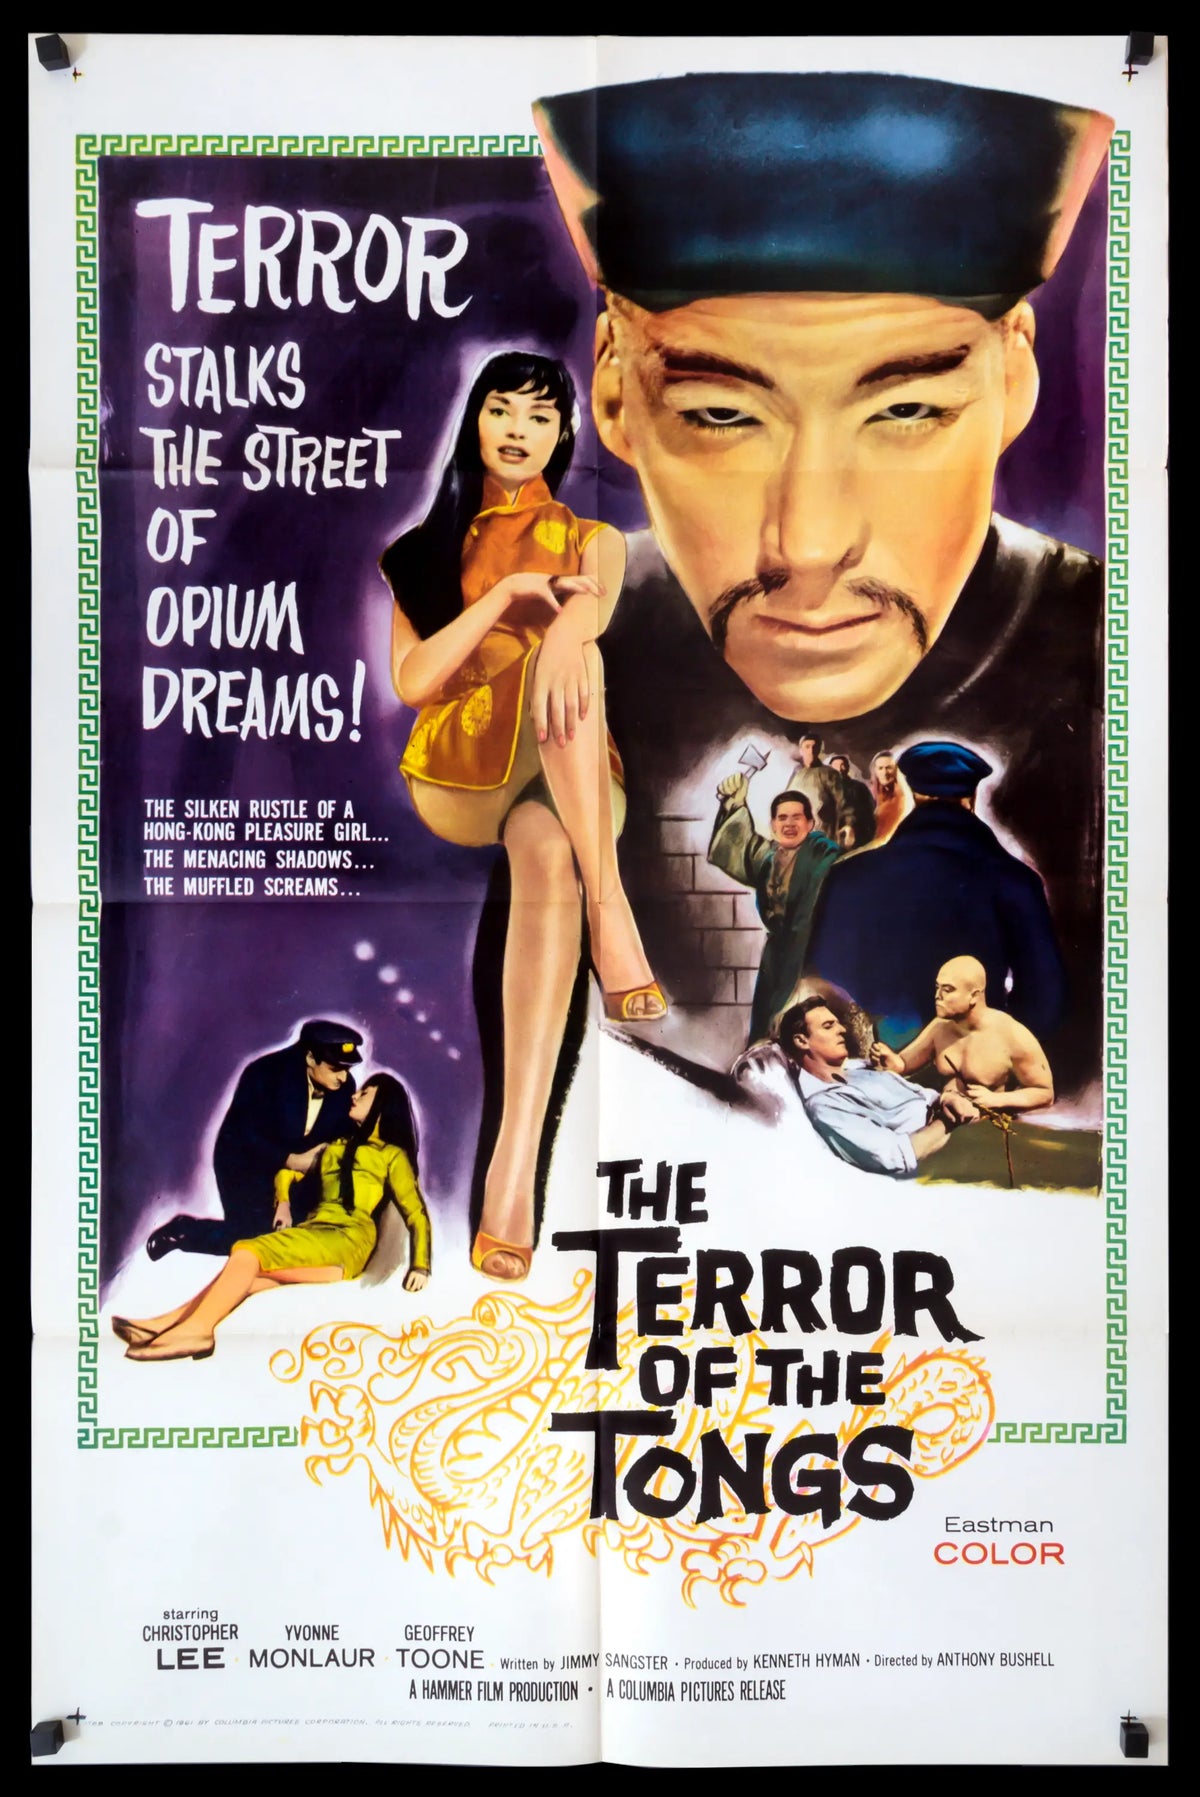 Terror of the Tongs (1961) original movie poster for sale at Original Film Art